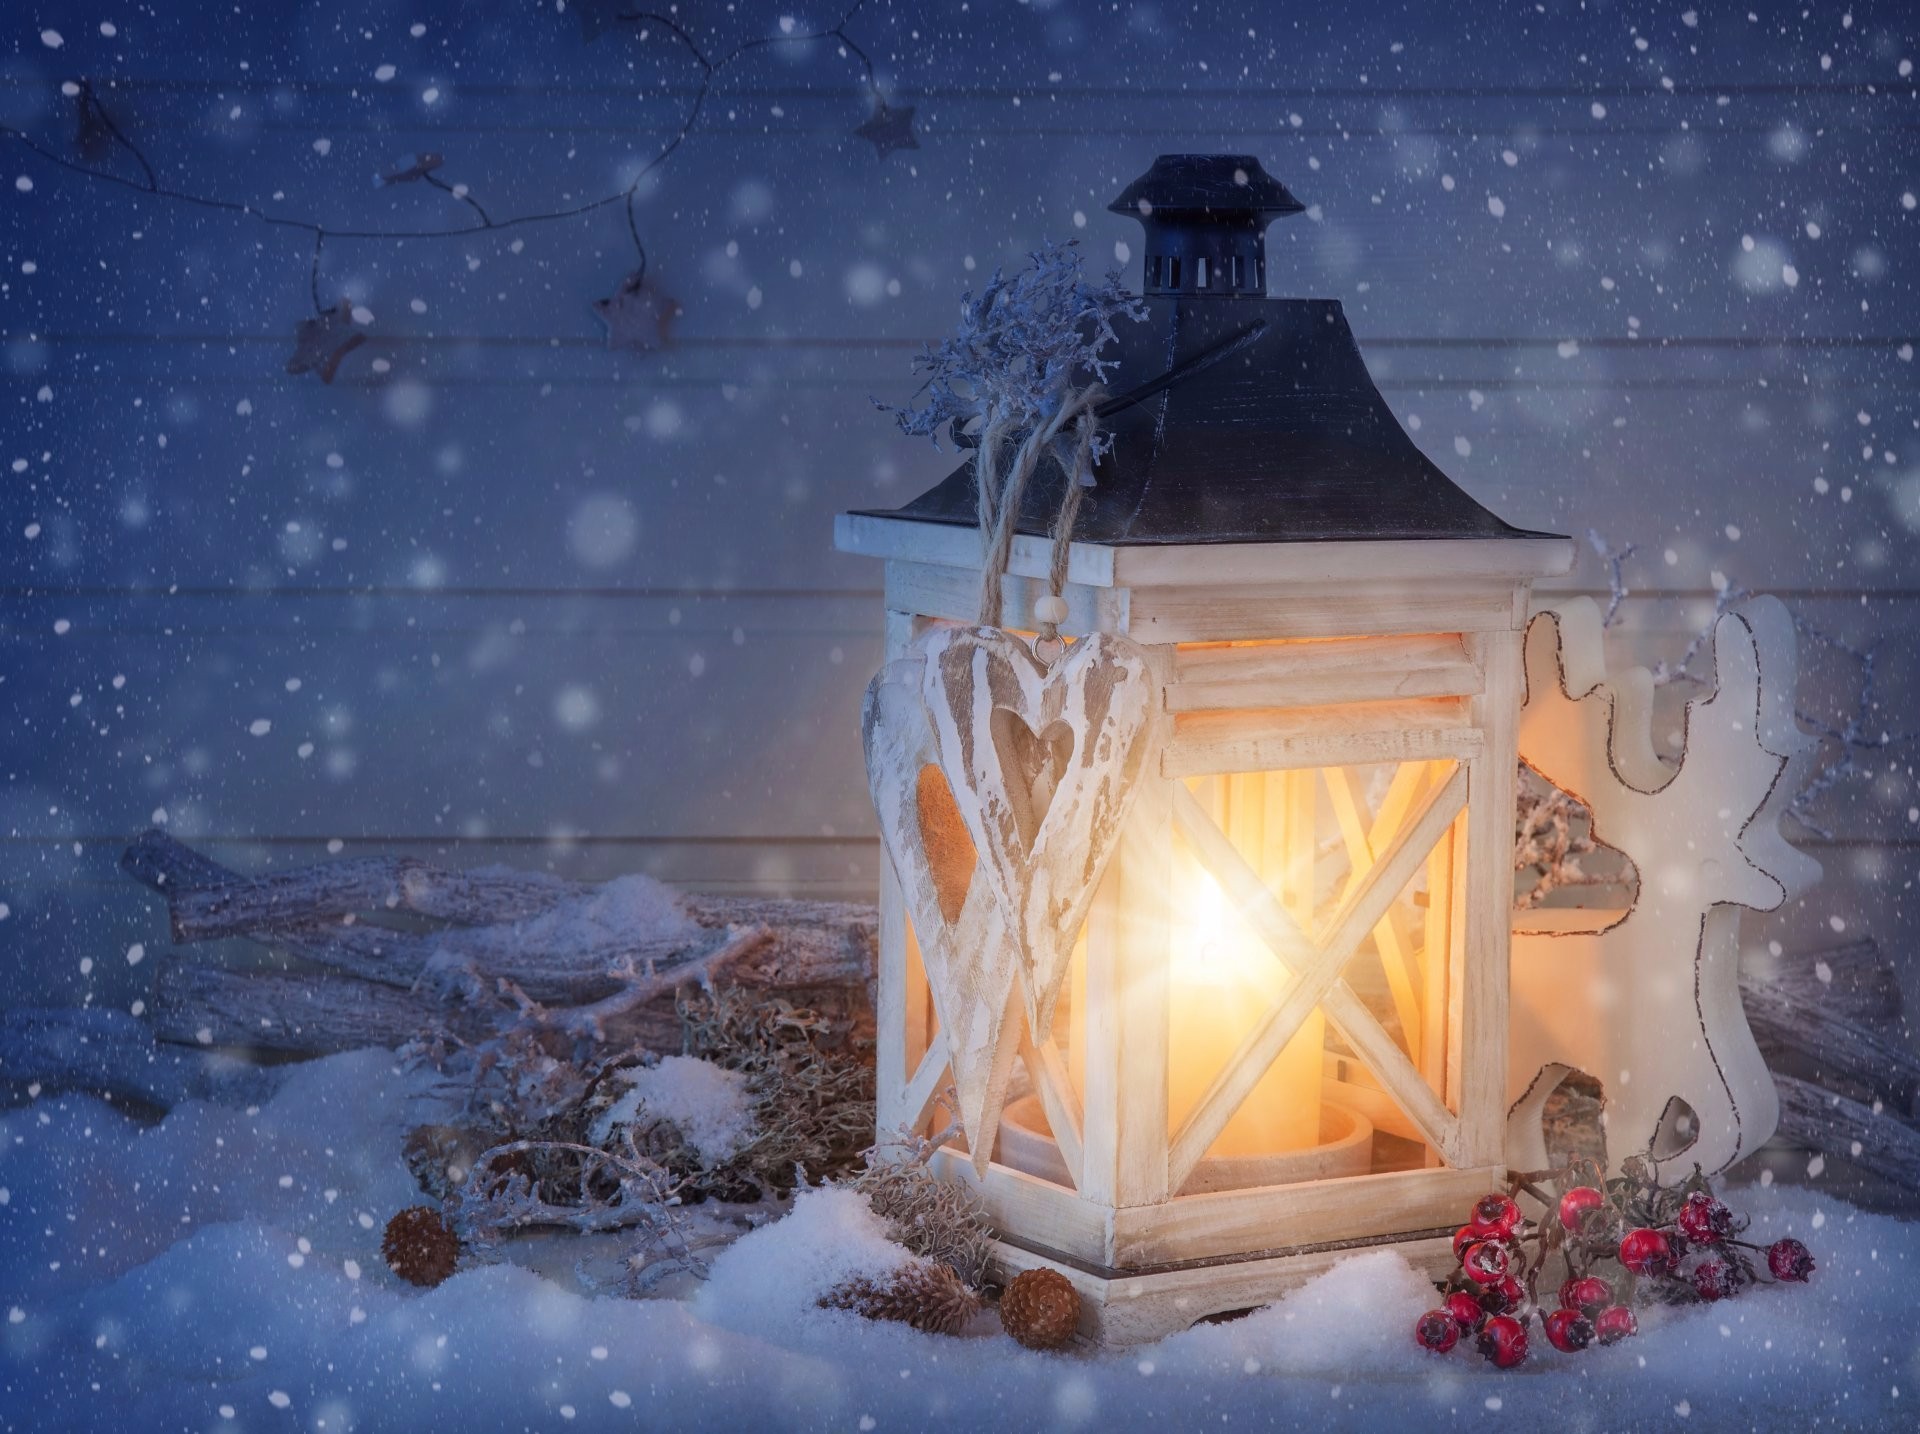 Скачать обои бесплатно Снег, Свет, Рождество, Фонарь, Ягода, Снегопад, Праздничные картинка на рабочий стол ПК